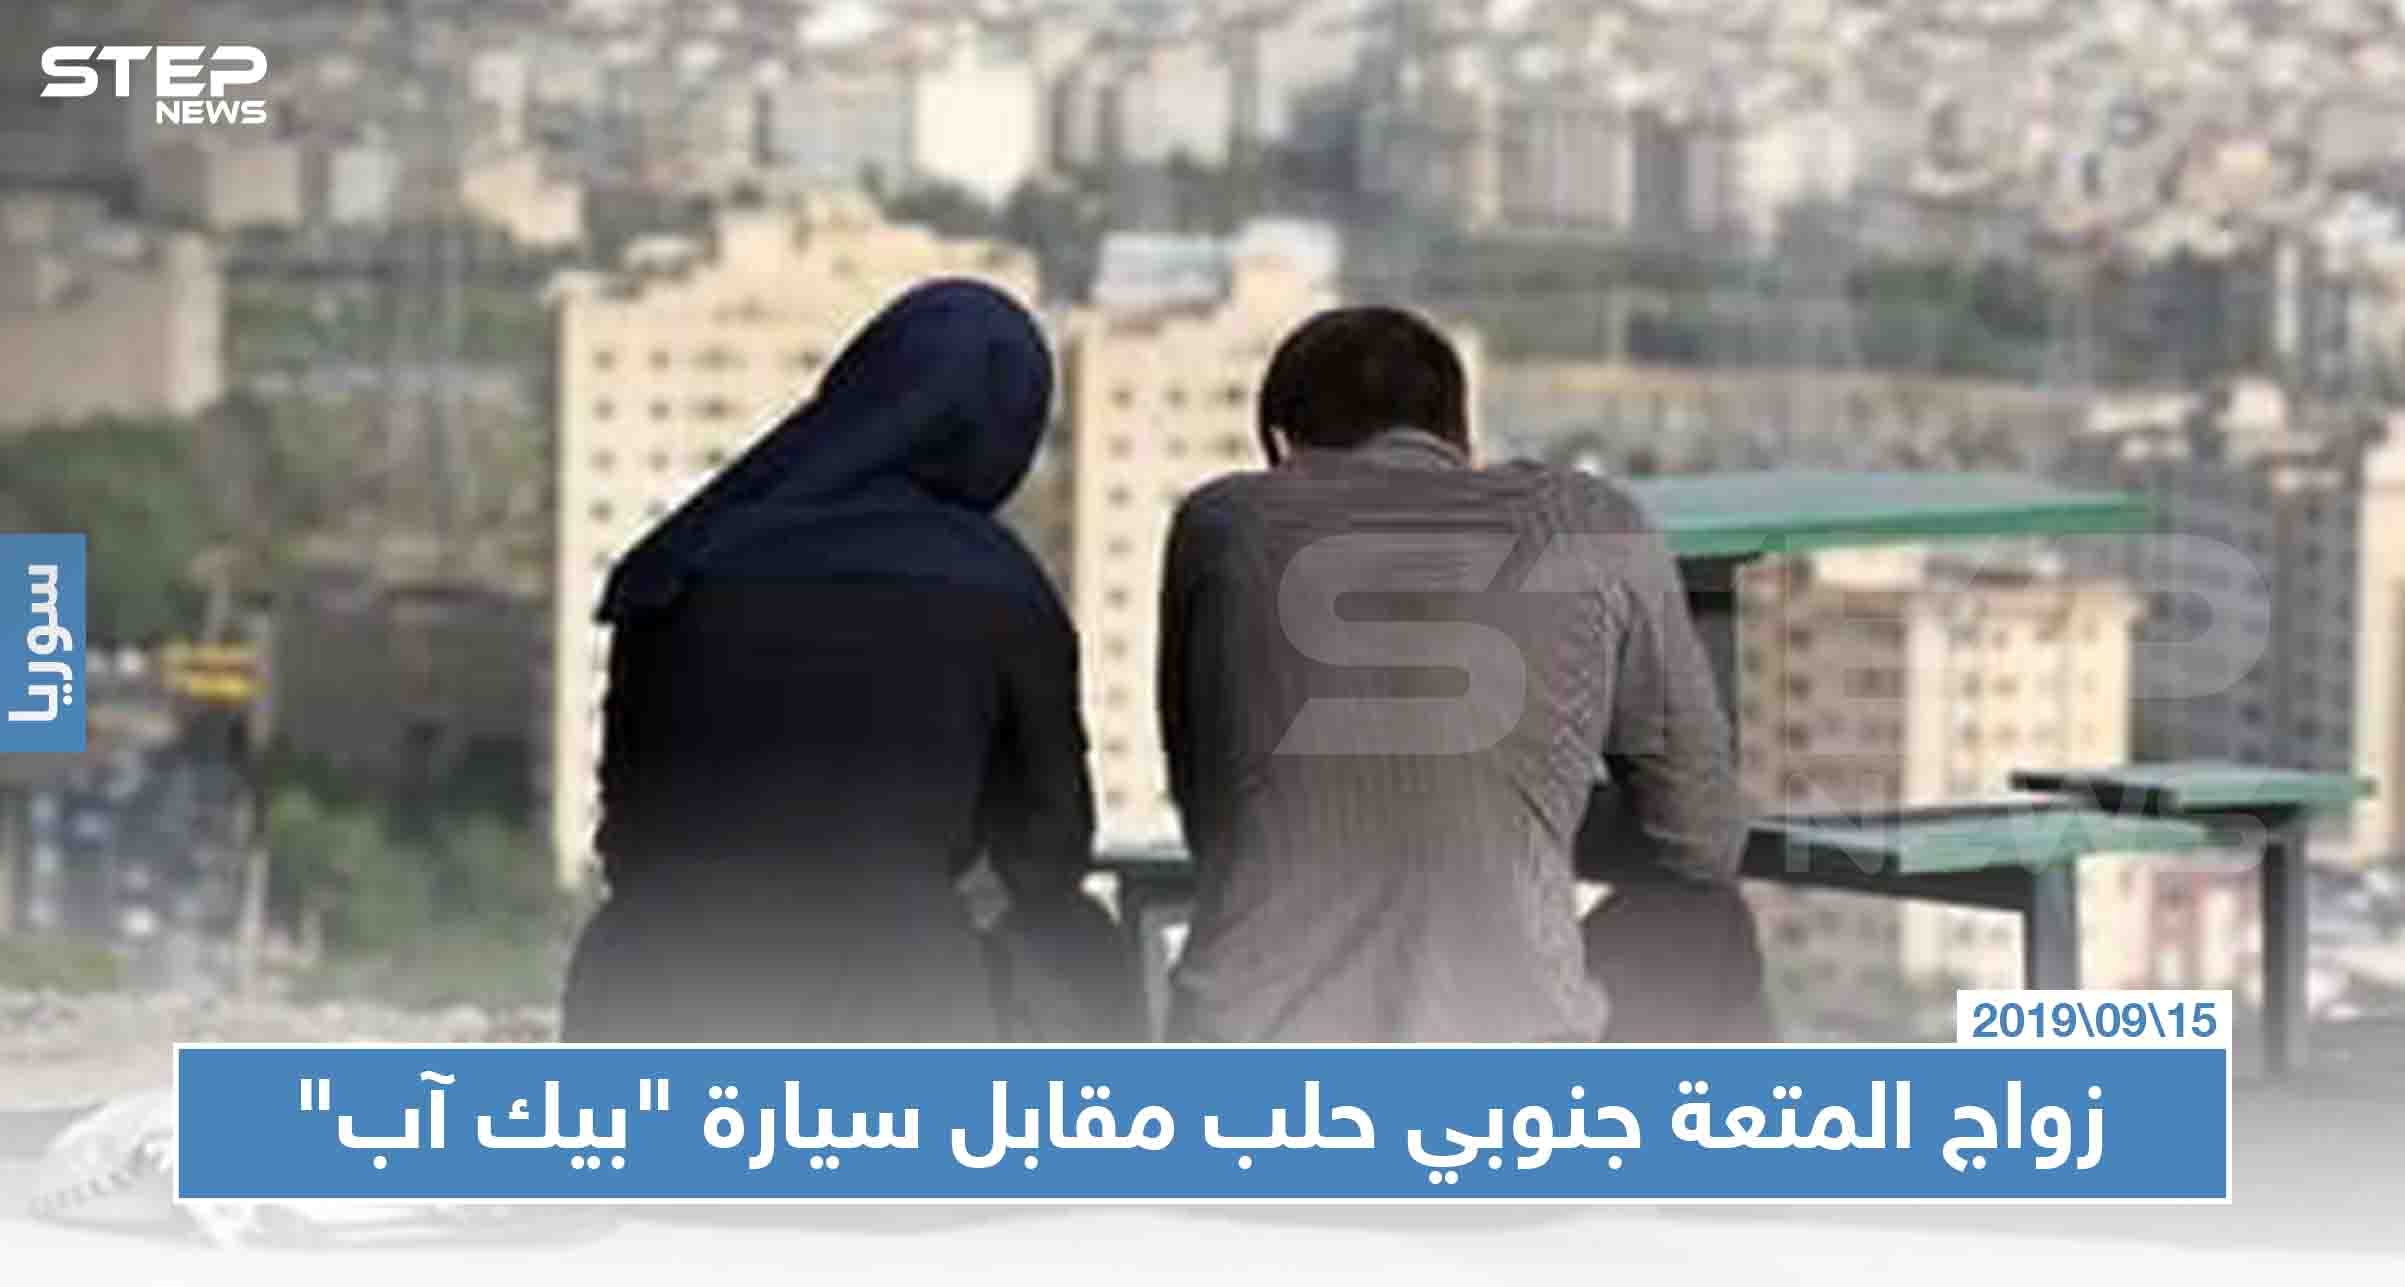   ايران تستهدف المجتمع السوري بتنشيط مؤسسة ل"زواج المتعة"